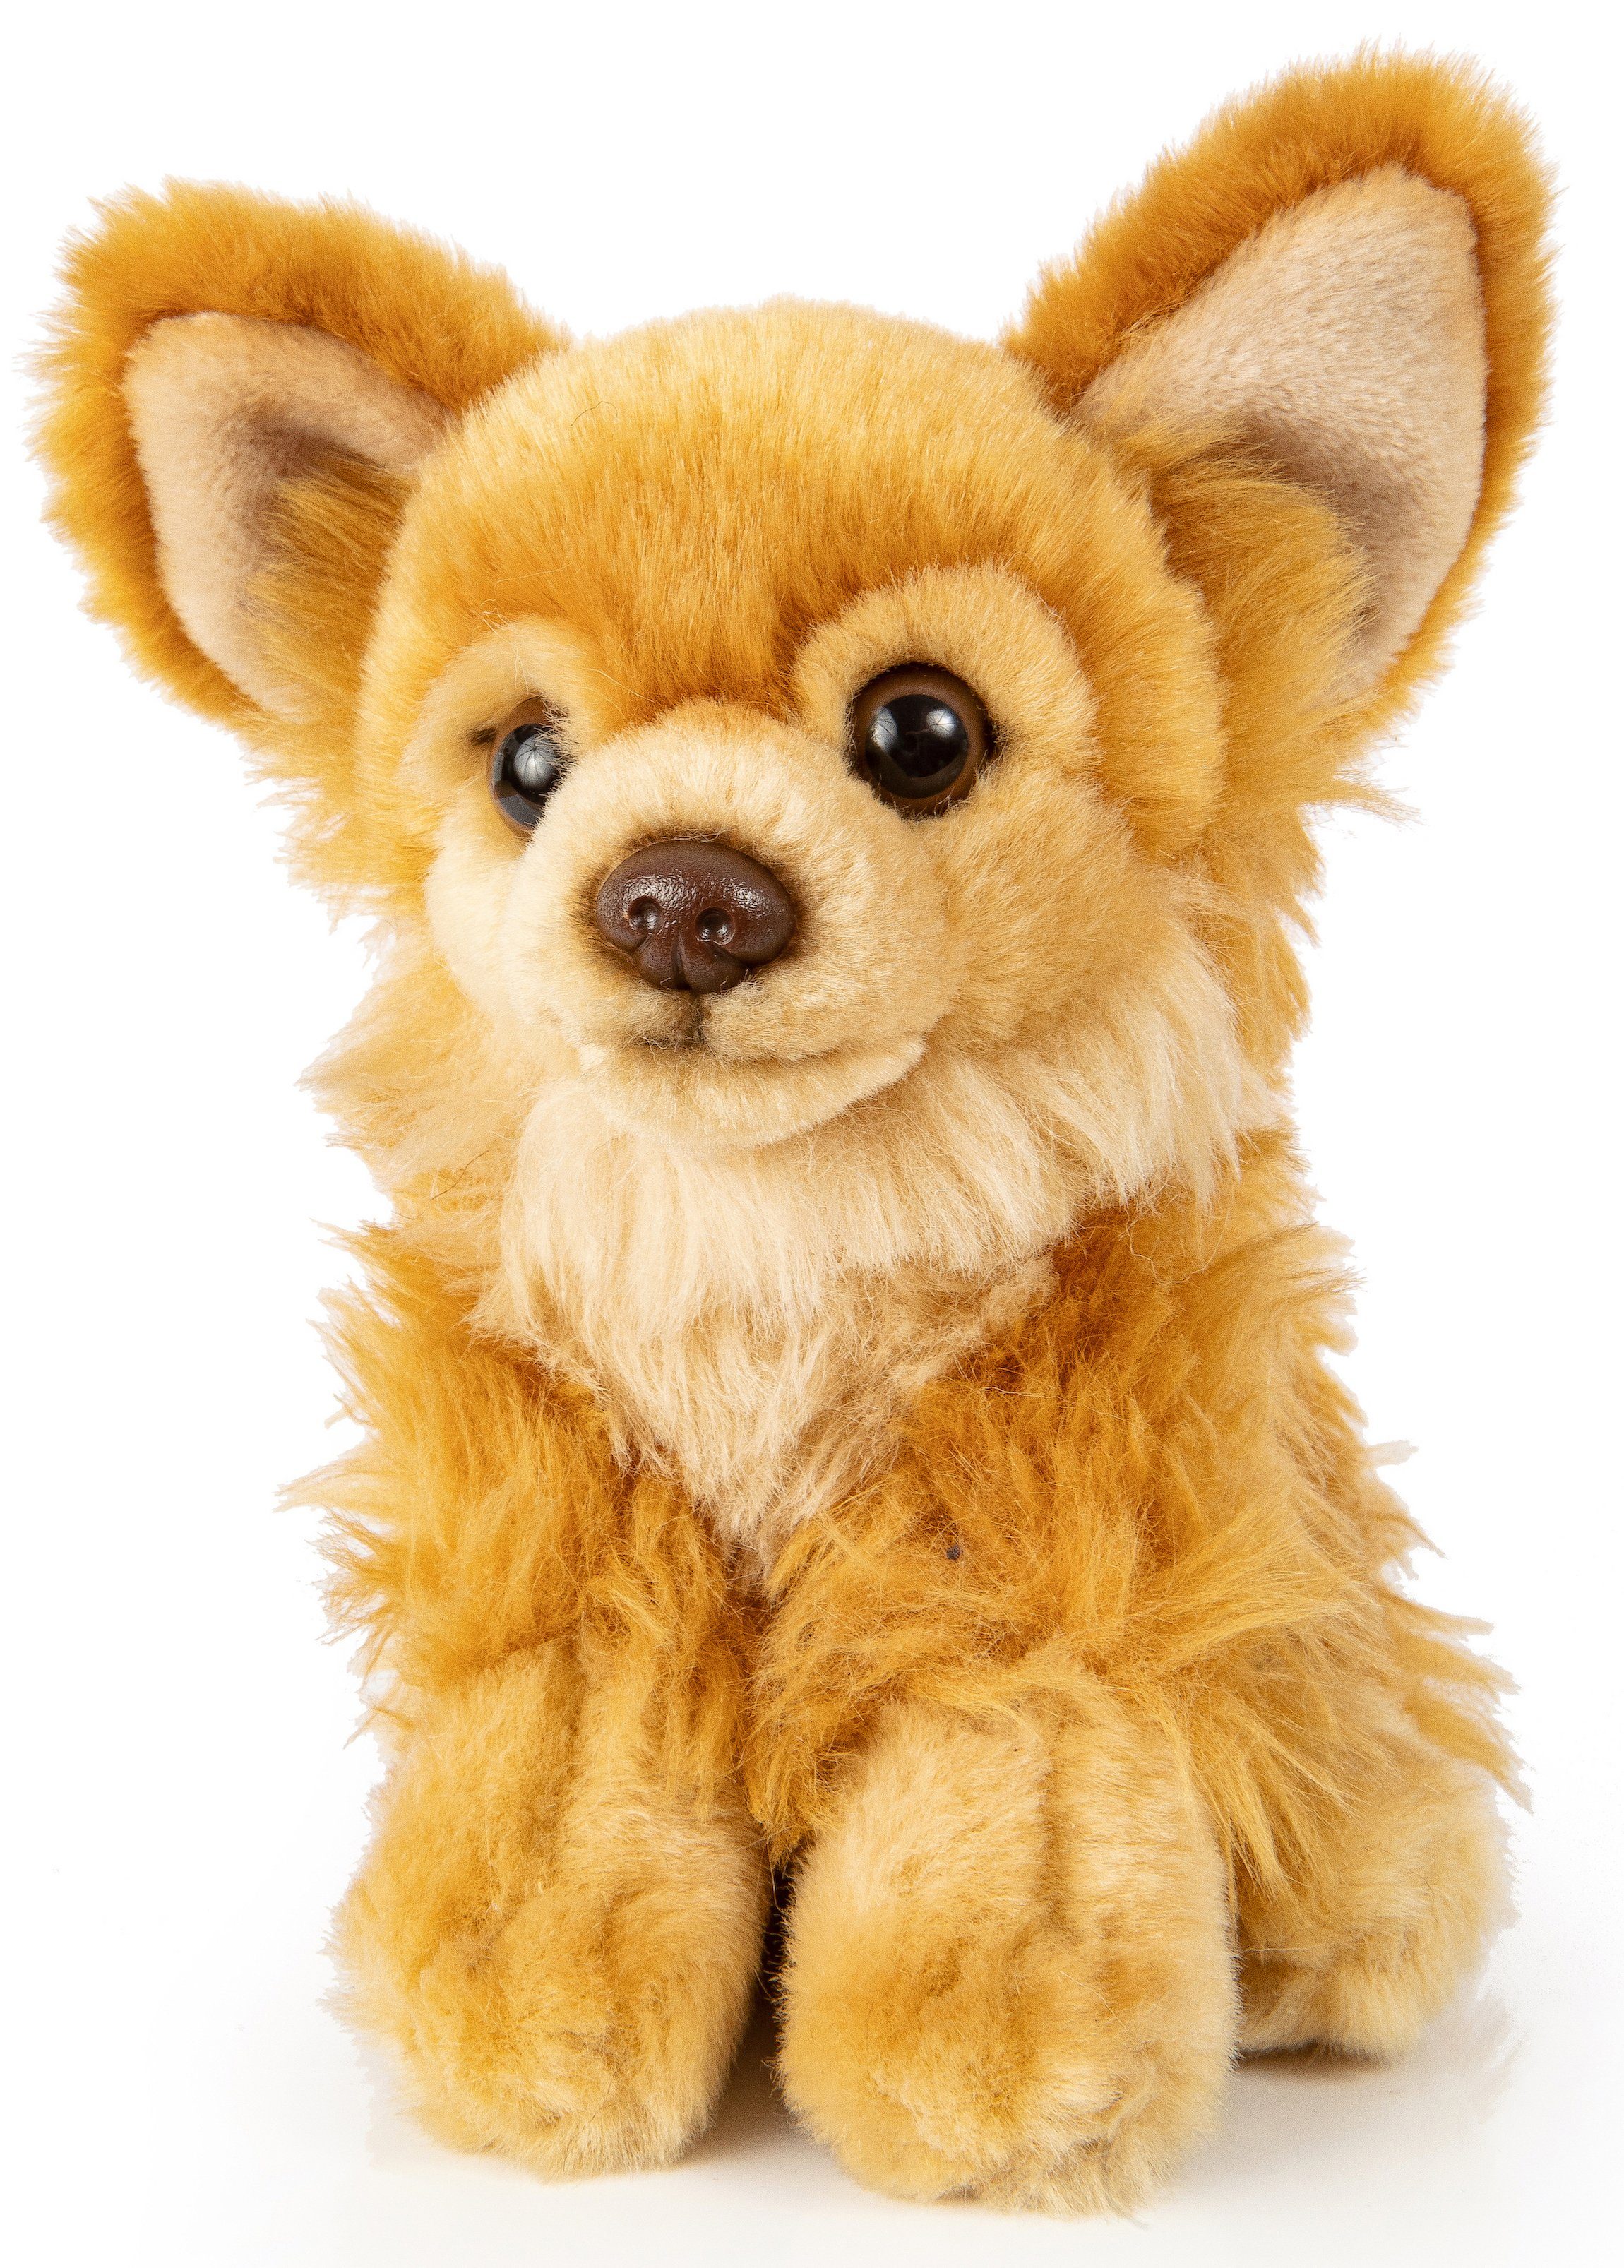 Uni-Toys Kuscheltier Chihuahua - versch. Fellfarben - Länge 18 cm - Plüsch-Hund, Plüschtier, zu 100 % recyceltes Füllmaterial Braun